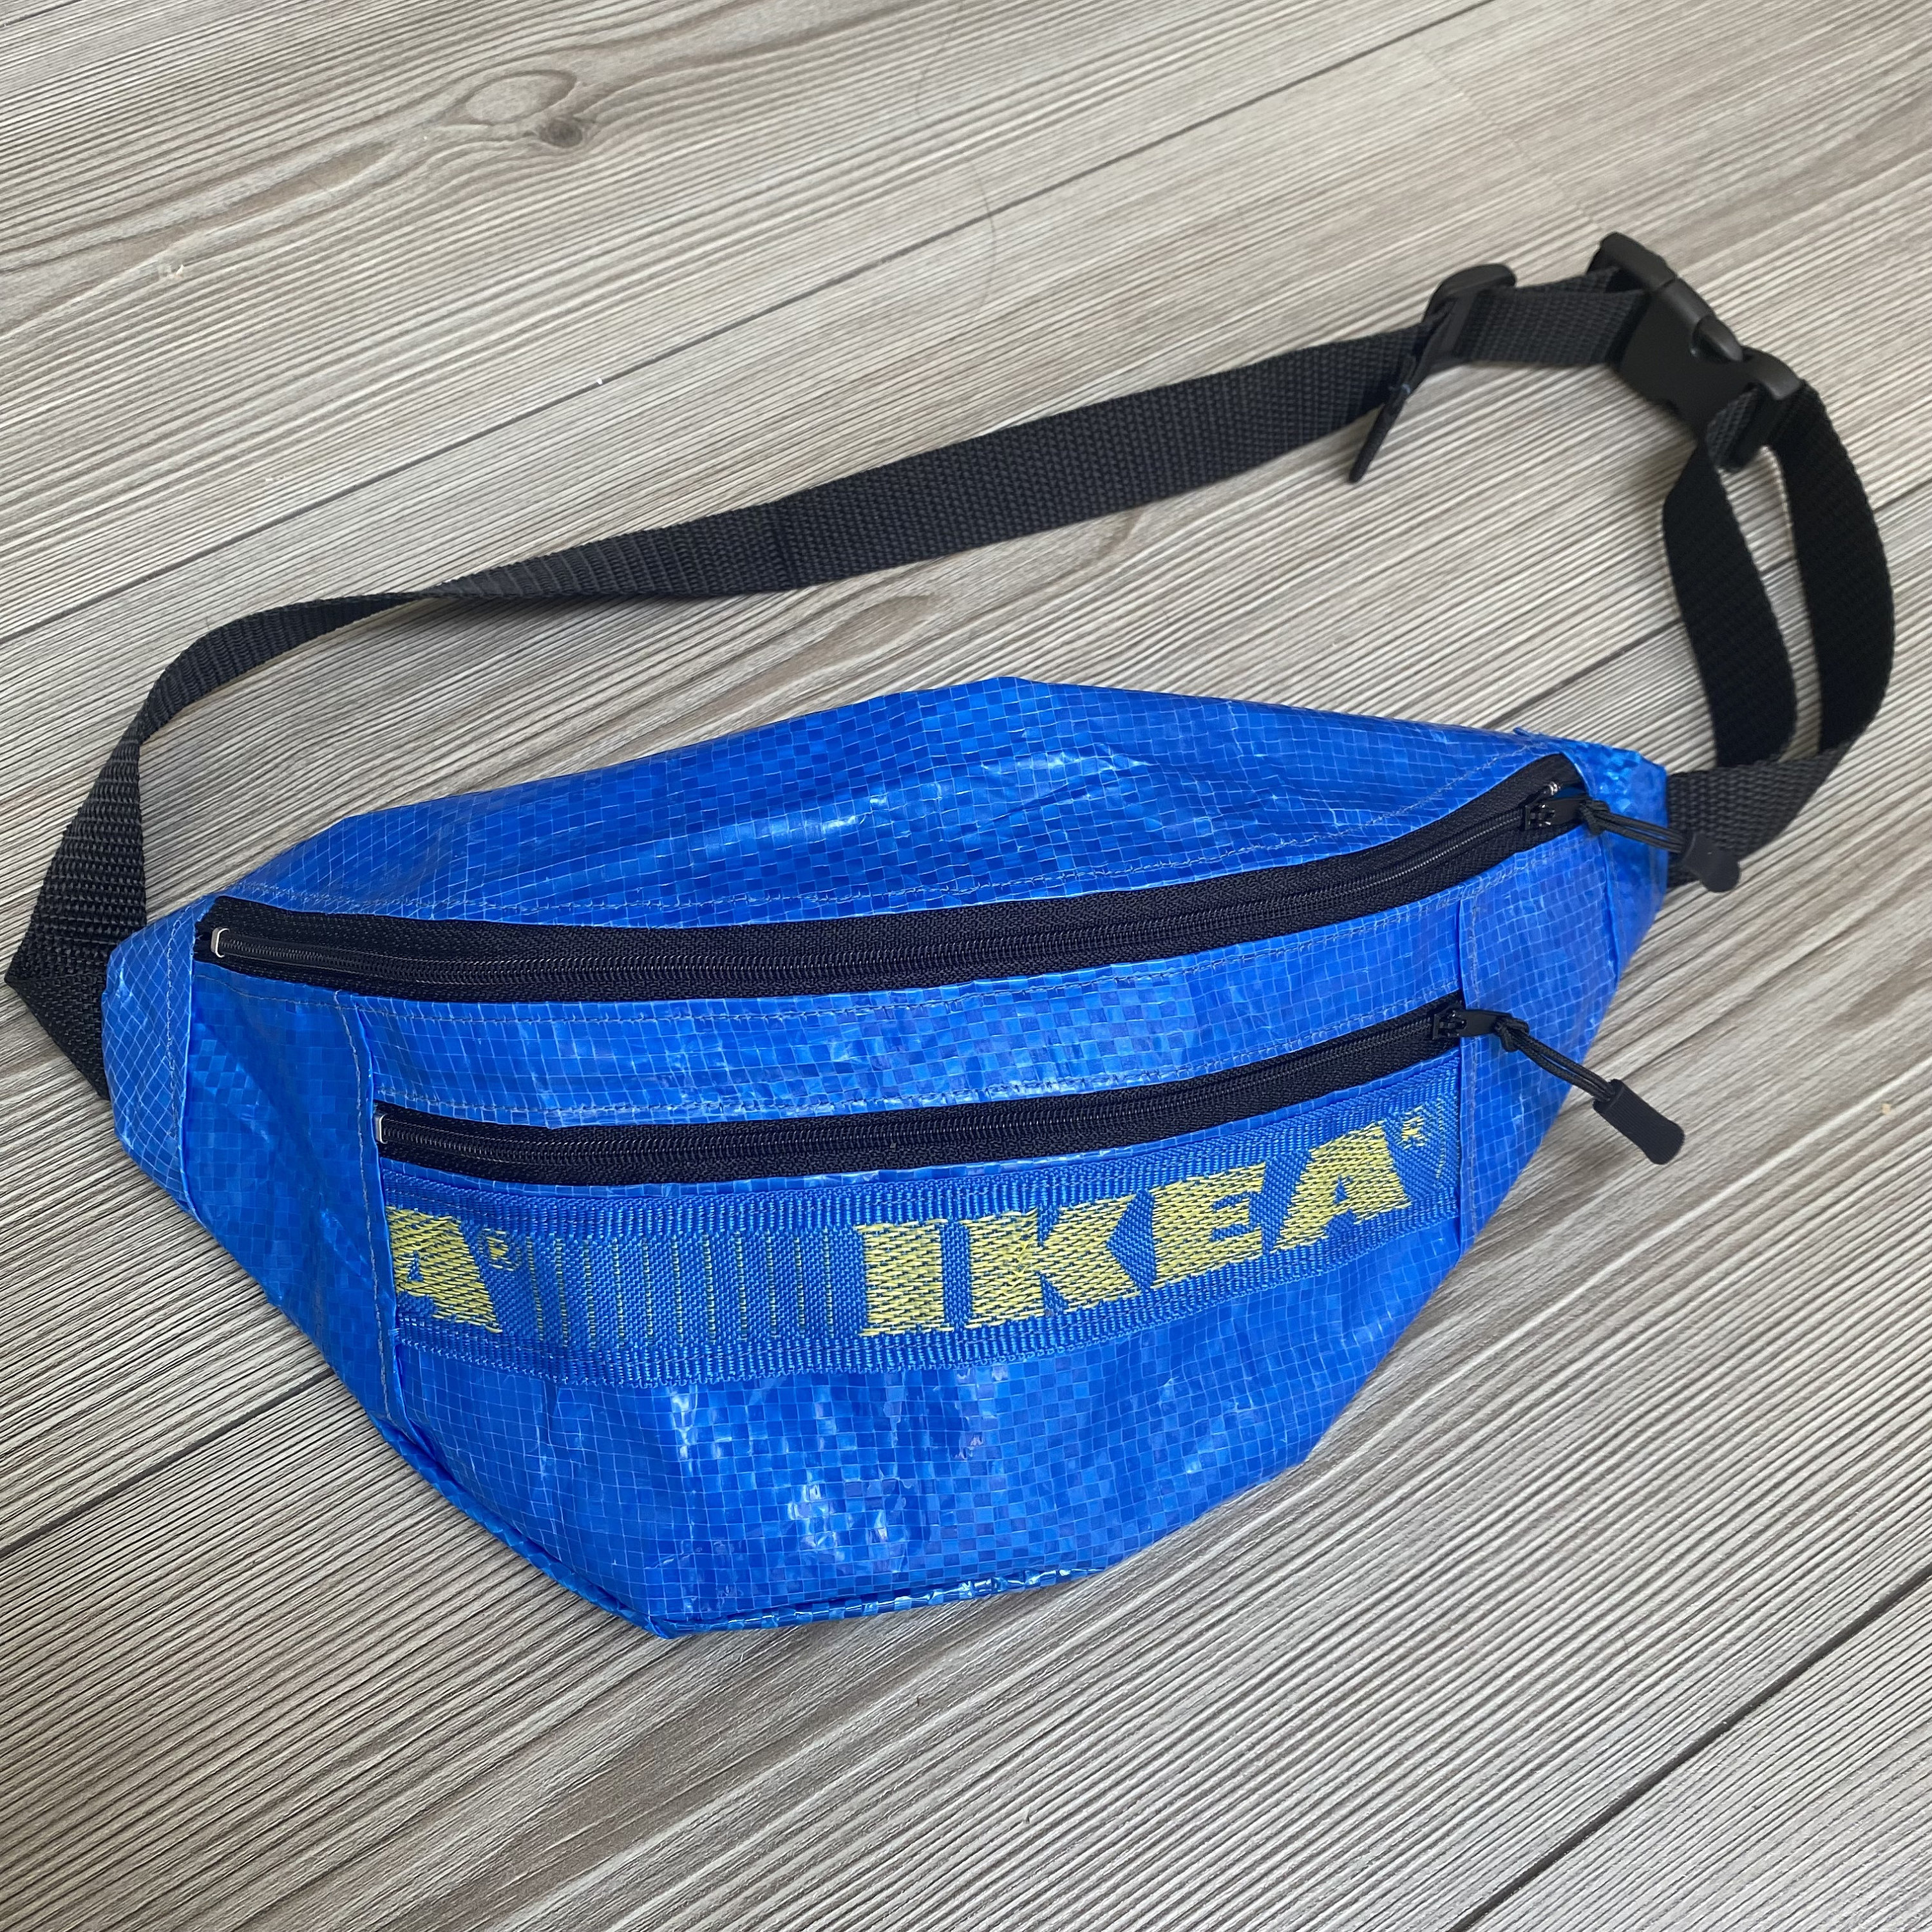 Ikea Bum Bag reciclado / Bolsa de viaje. Hecho a mano en el Etsy España